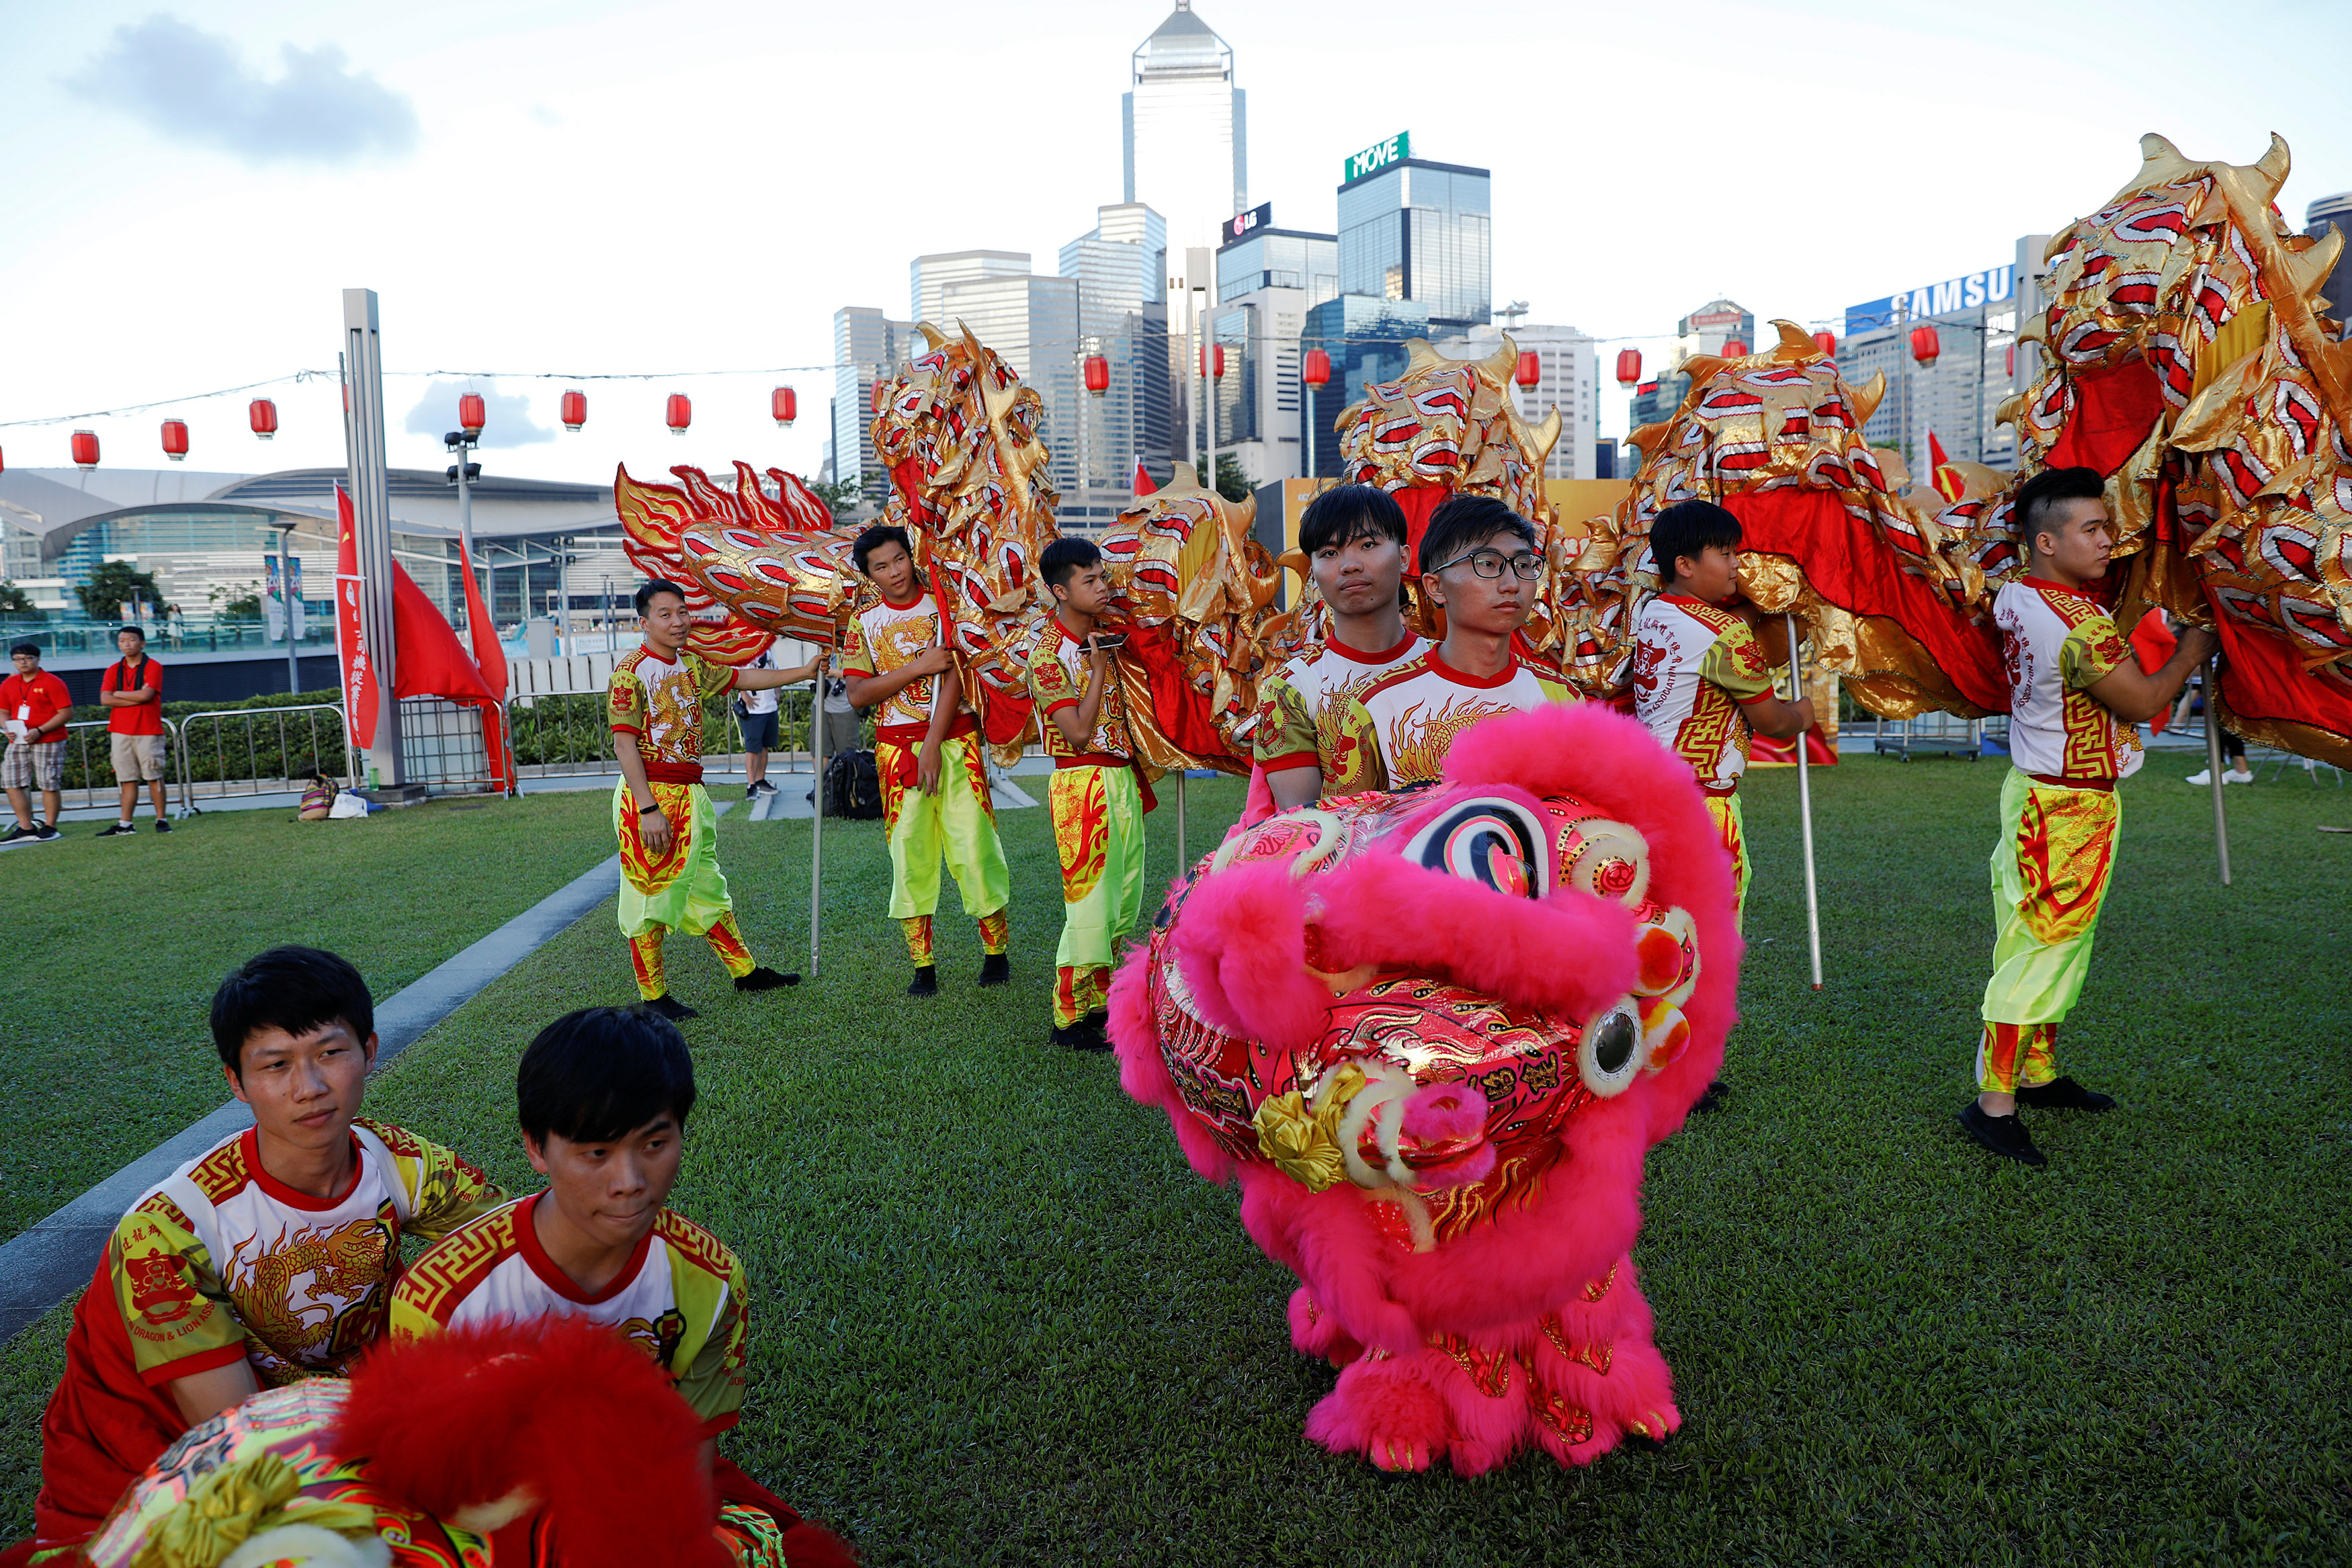 احتفالات الصينيين بالذكرى الـ 20 لعودة هونج كونج للصين